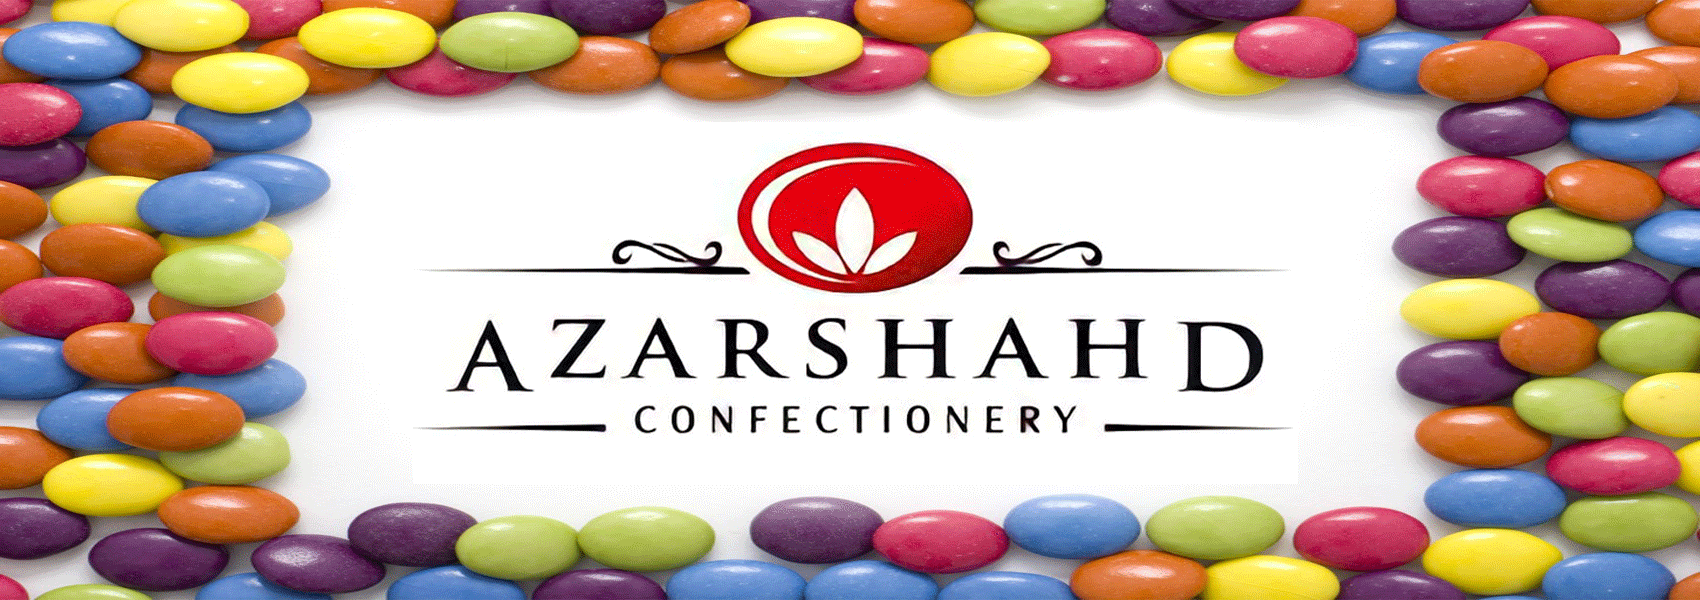 Products azarshahd